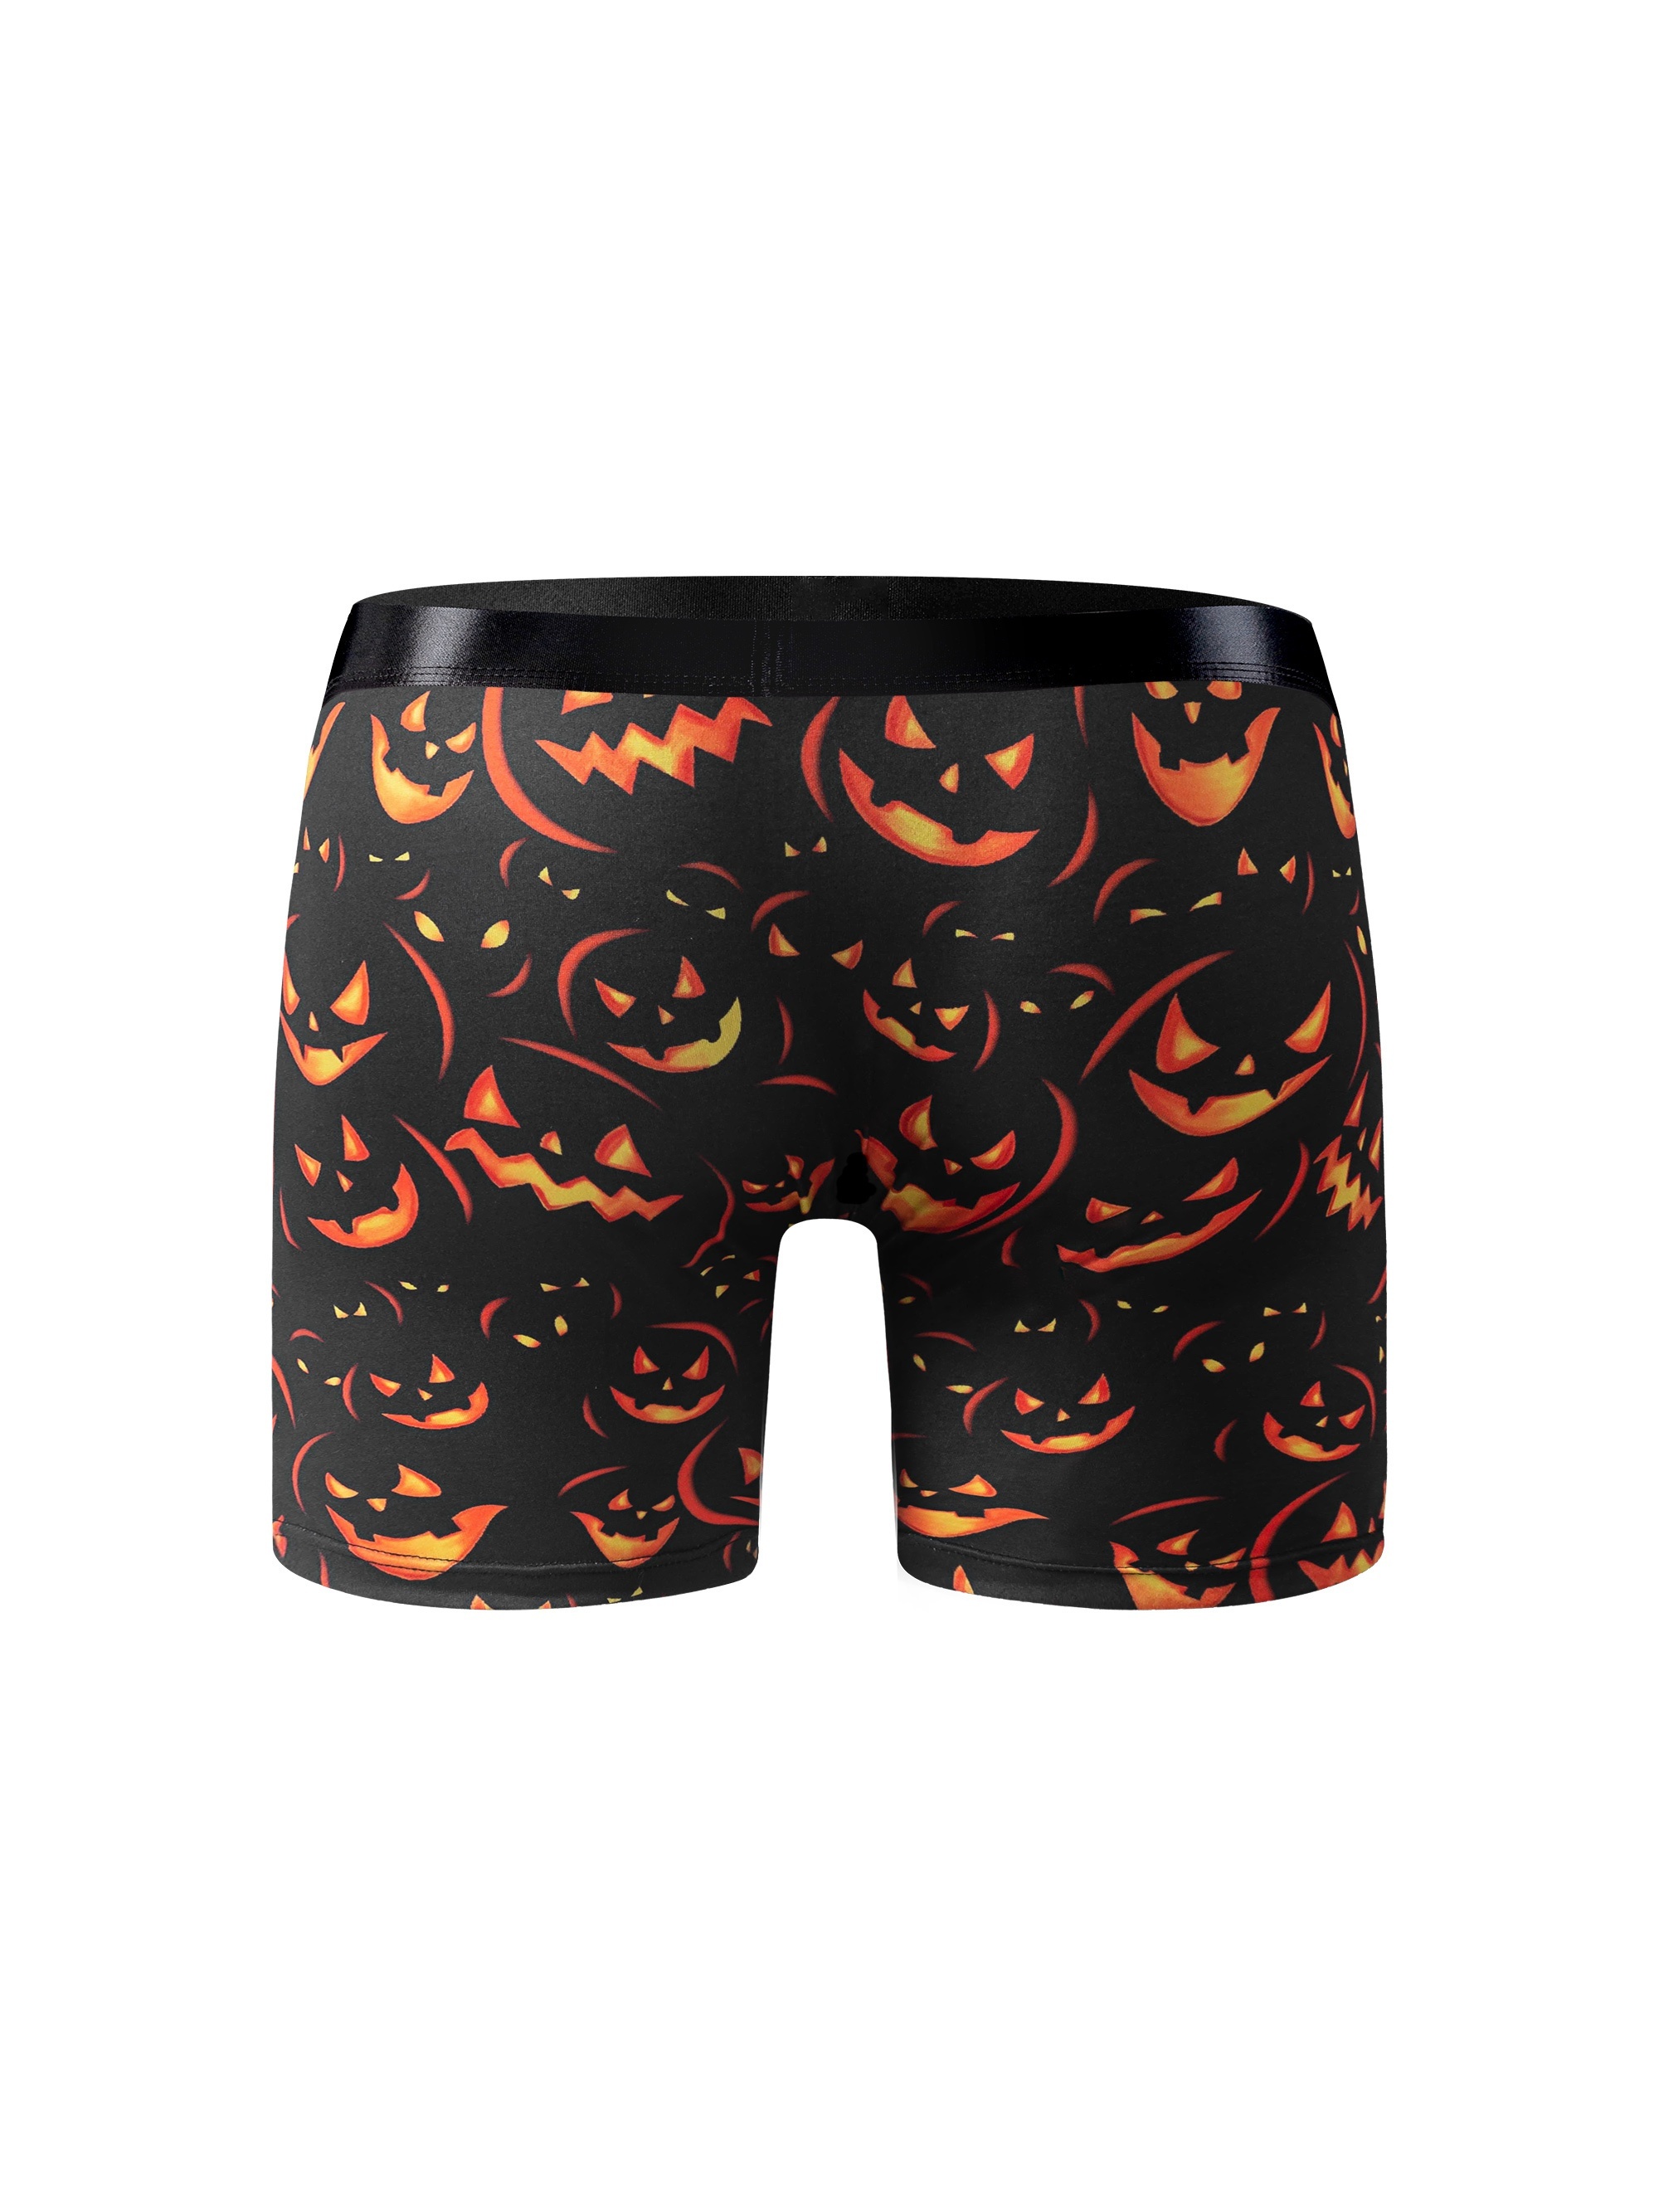 Men's Halloween Pumpkin Print Boxers